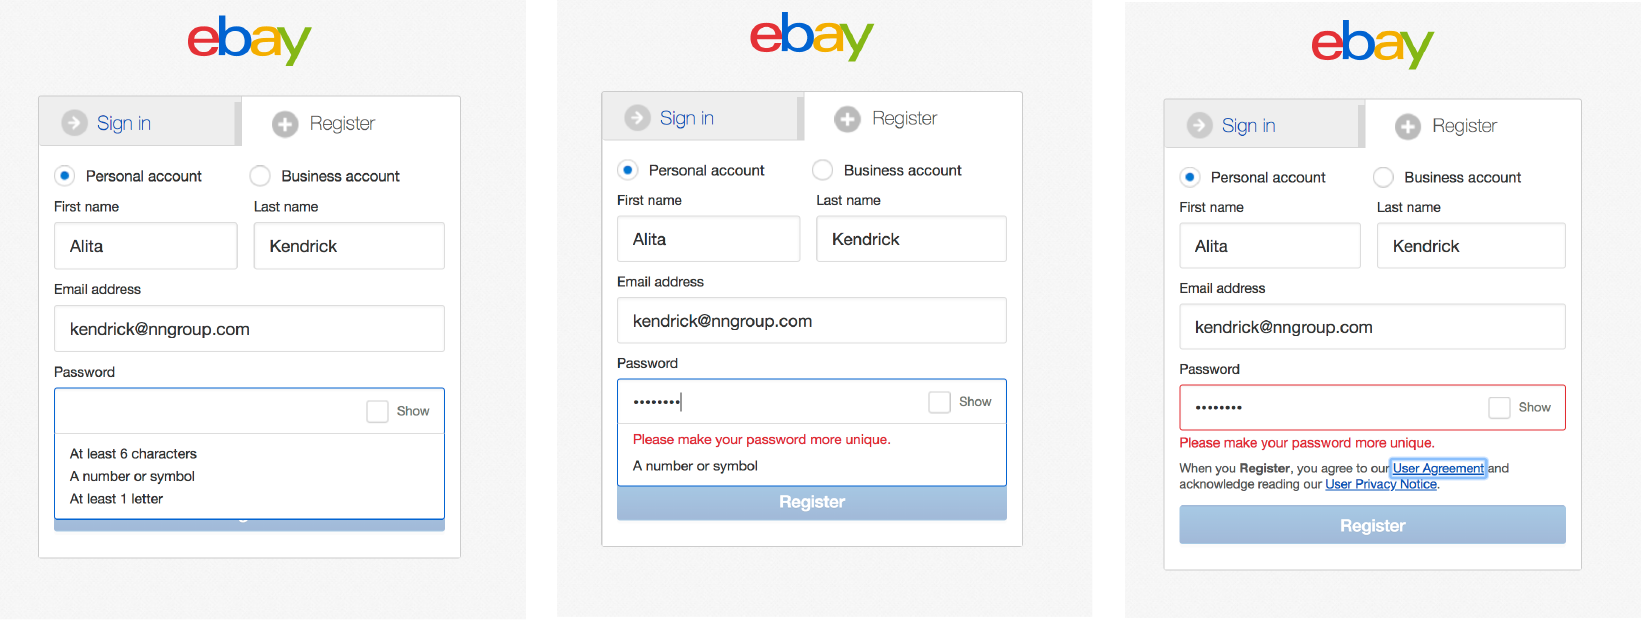 eBay использует микровзаимодействия в своей регистрационной форме, чтобы сообщить, соответствует ли пароль требованиям поля. 